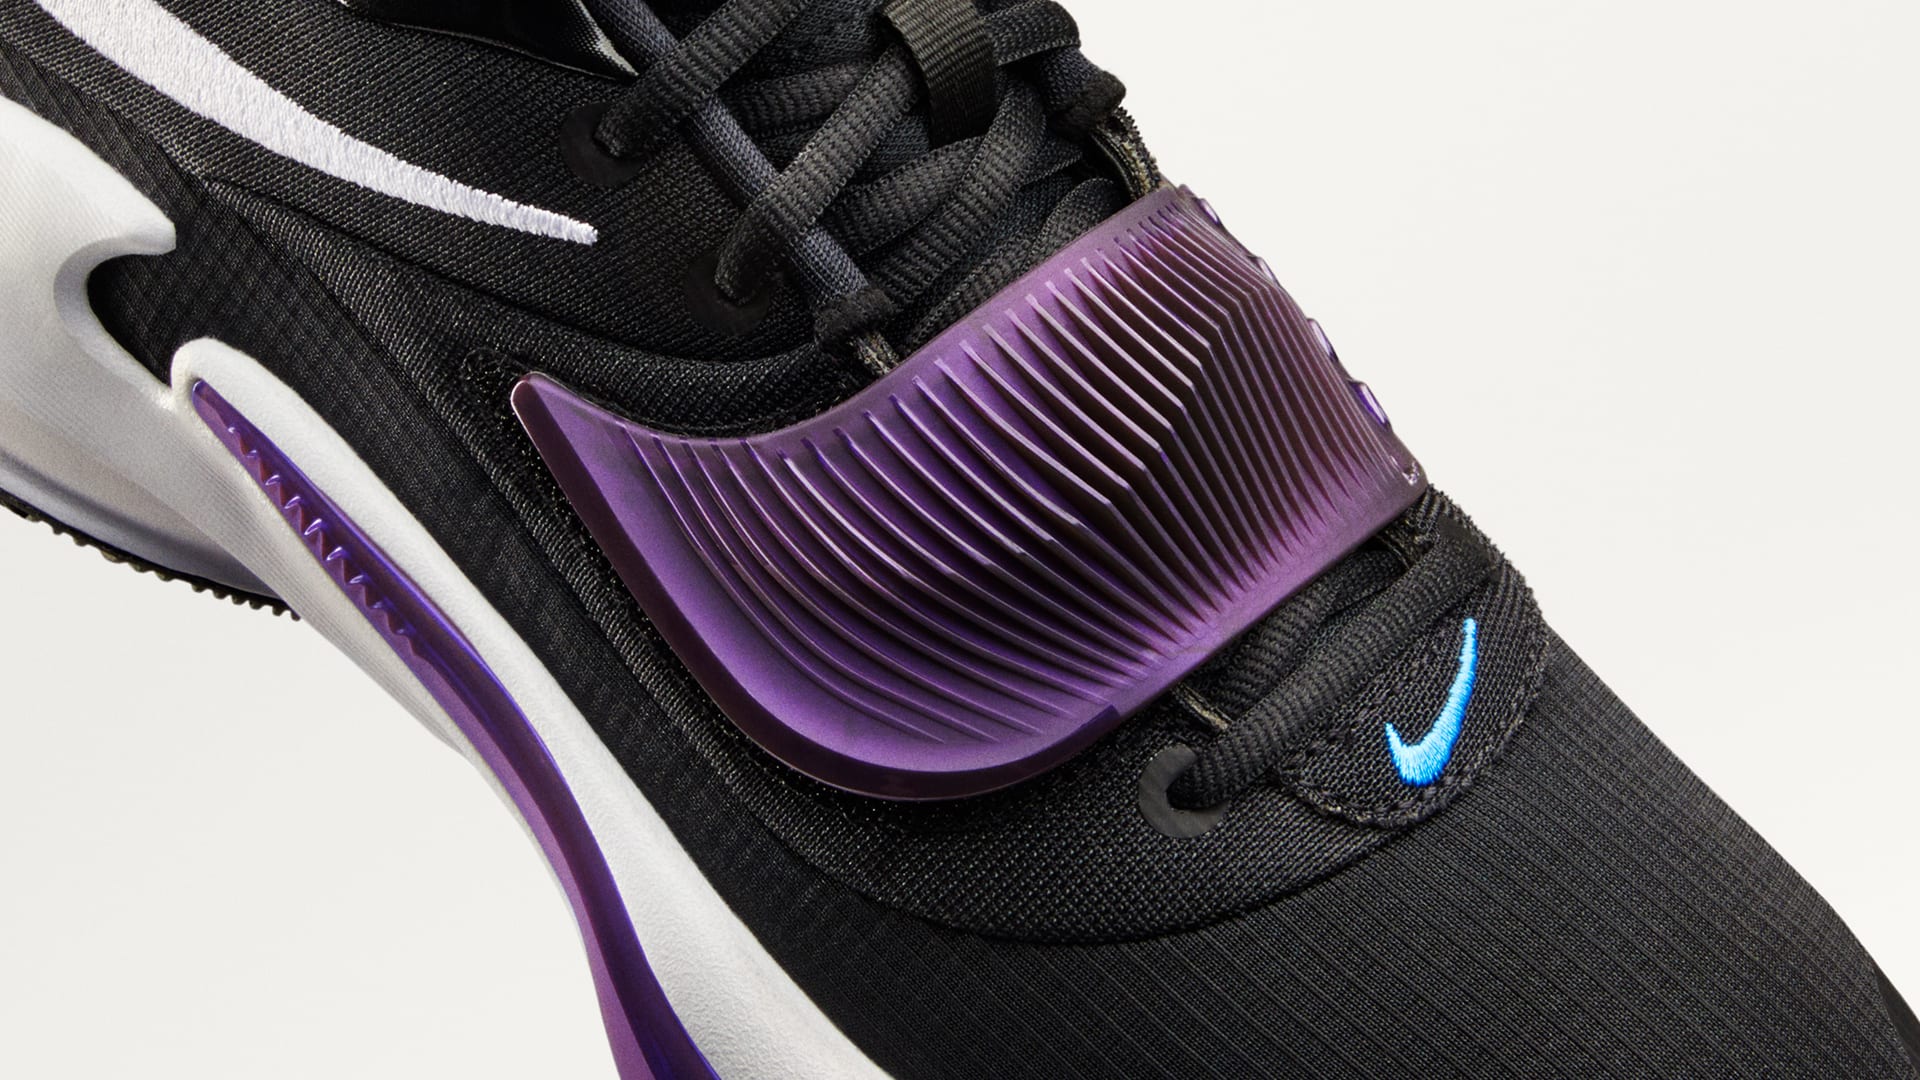 Giannis Antetokounmpo's Third Nike Signature Shoe Unveiled